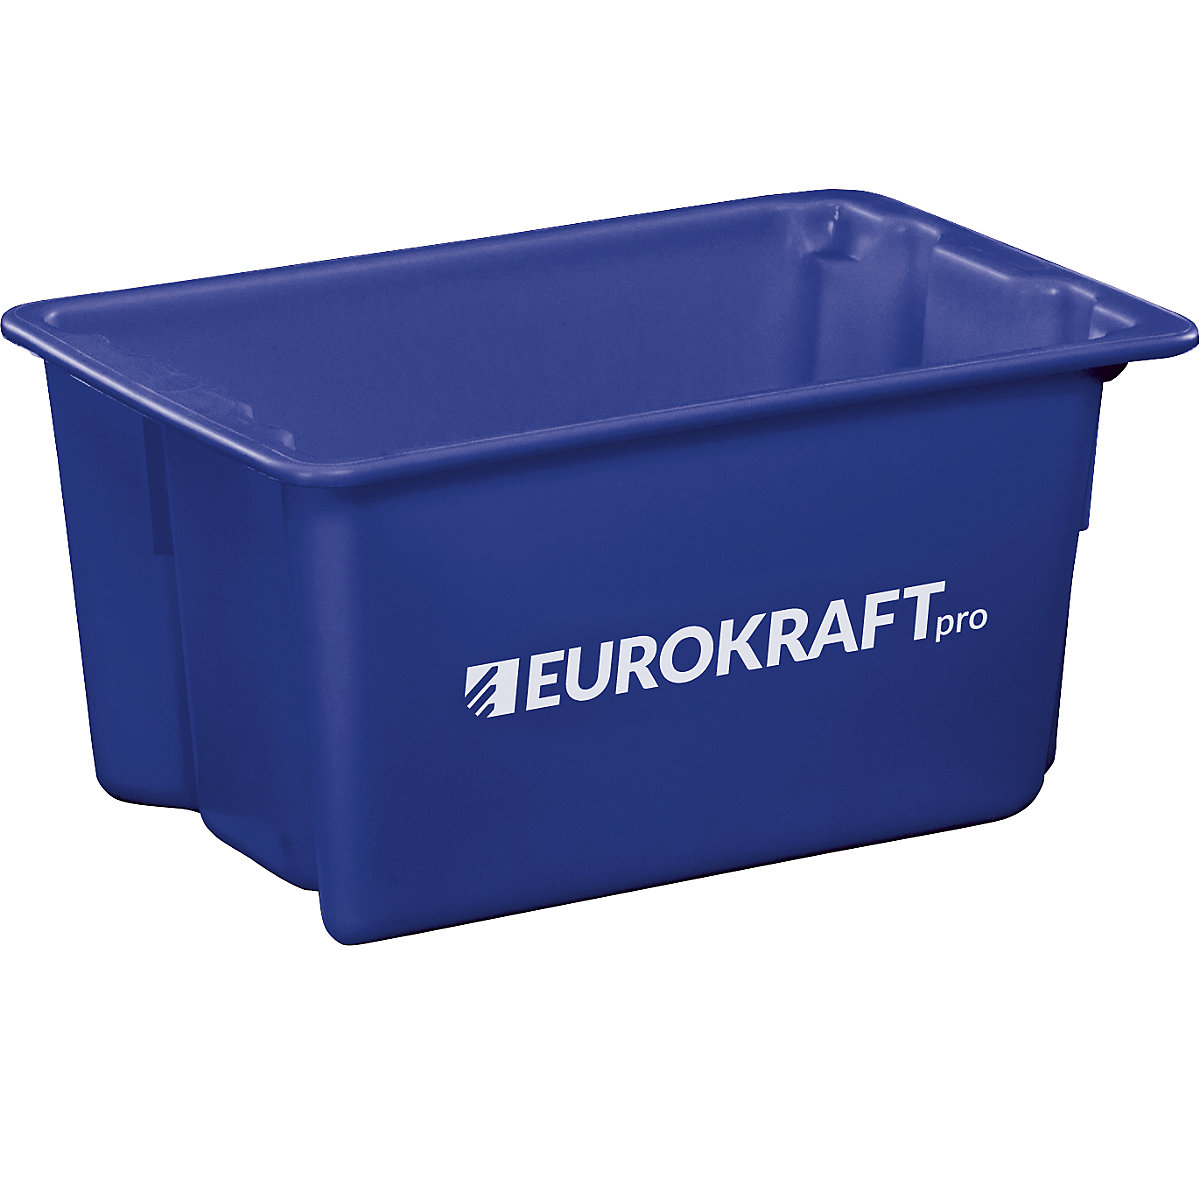 EUROKRAFTpro – Otočná stohovacia nádoba z polypropylénu vhodného pre potraviny, objem 50 litrov, OJ 3 ks, steny a dno uzatvorené, modrá